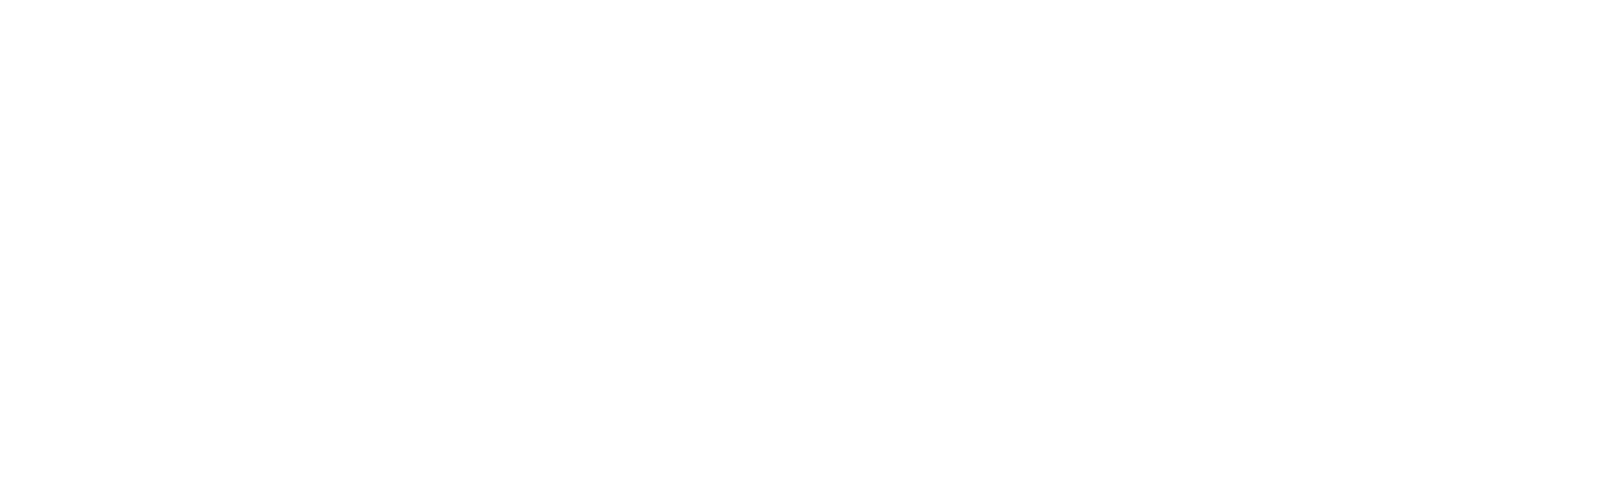 WiseTech Global
 Logo groß für dunkle Hintergründe (transparentes PNG)